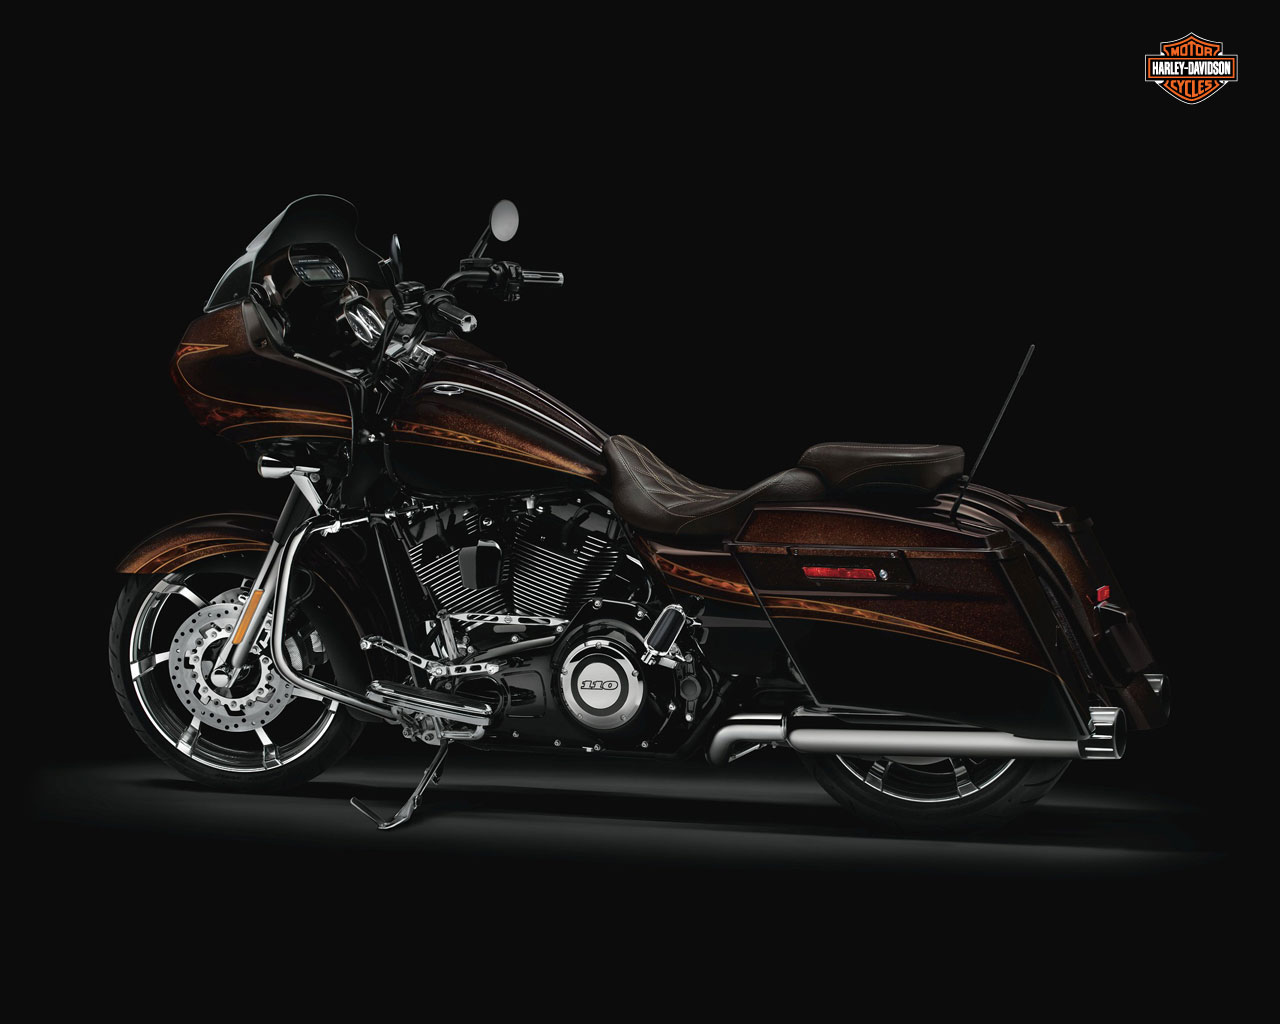 2012 Harley Davidson Fltrxse Cvo Road Glide Custom Review